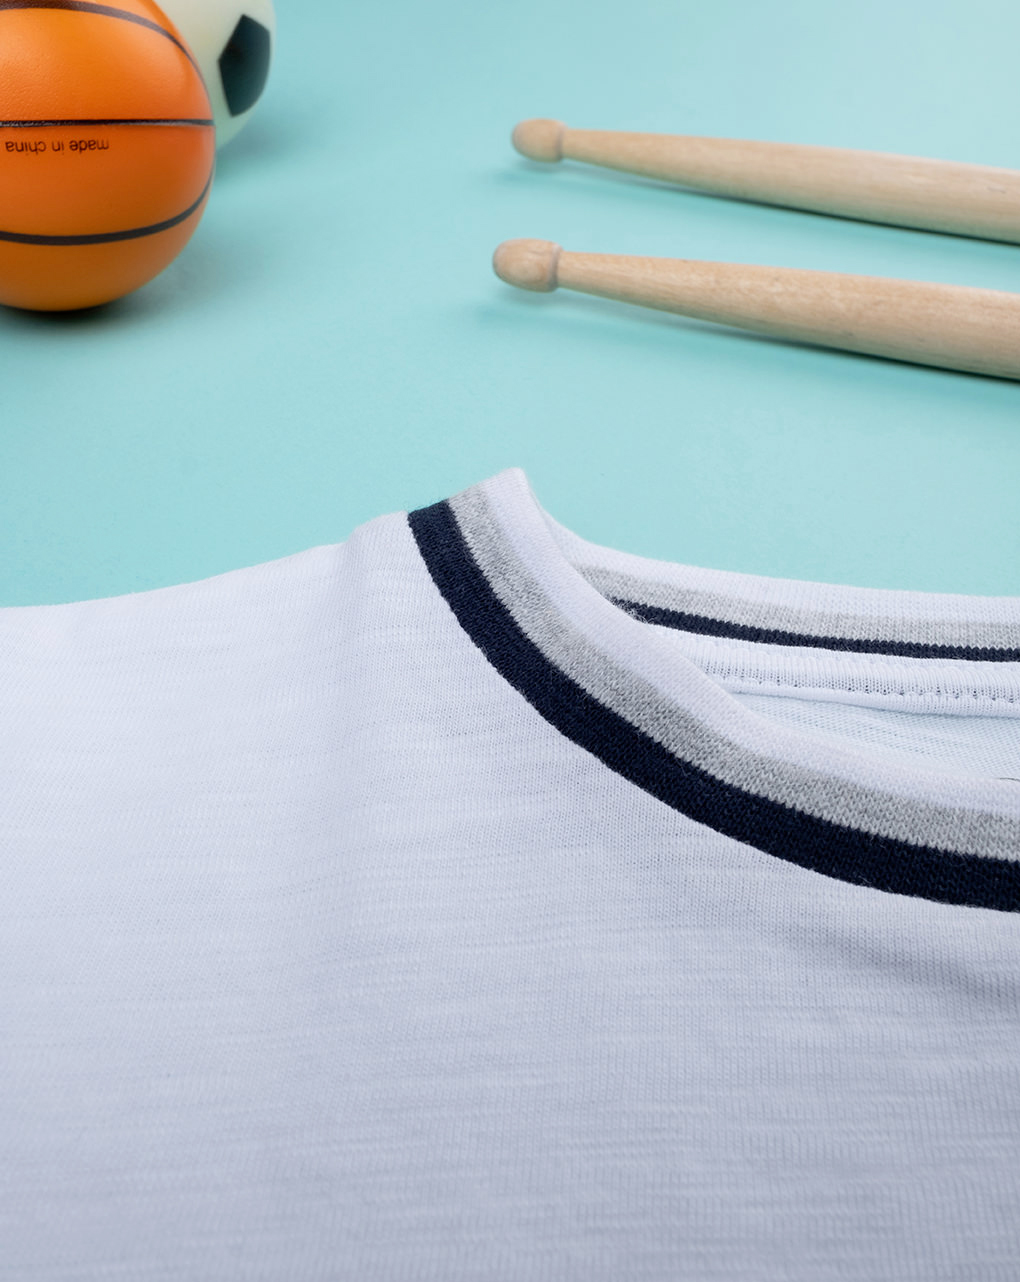 παιδικό t-shirt λευκό με ρίγες για αγόρι - Prénatal